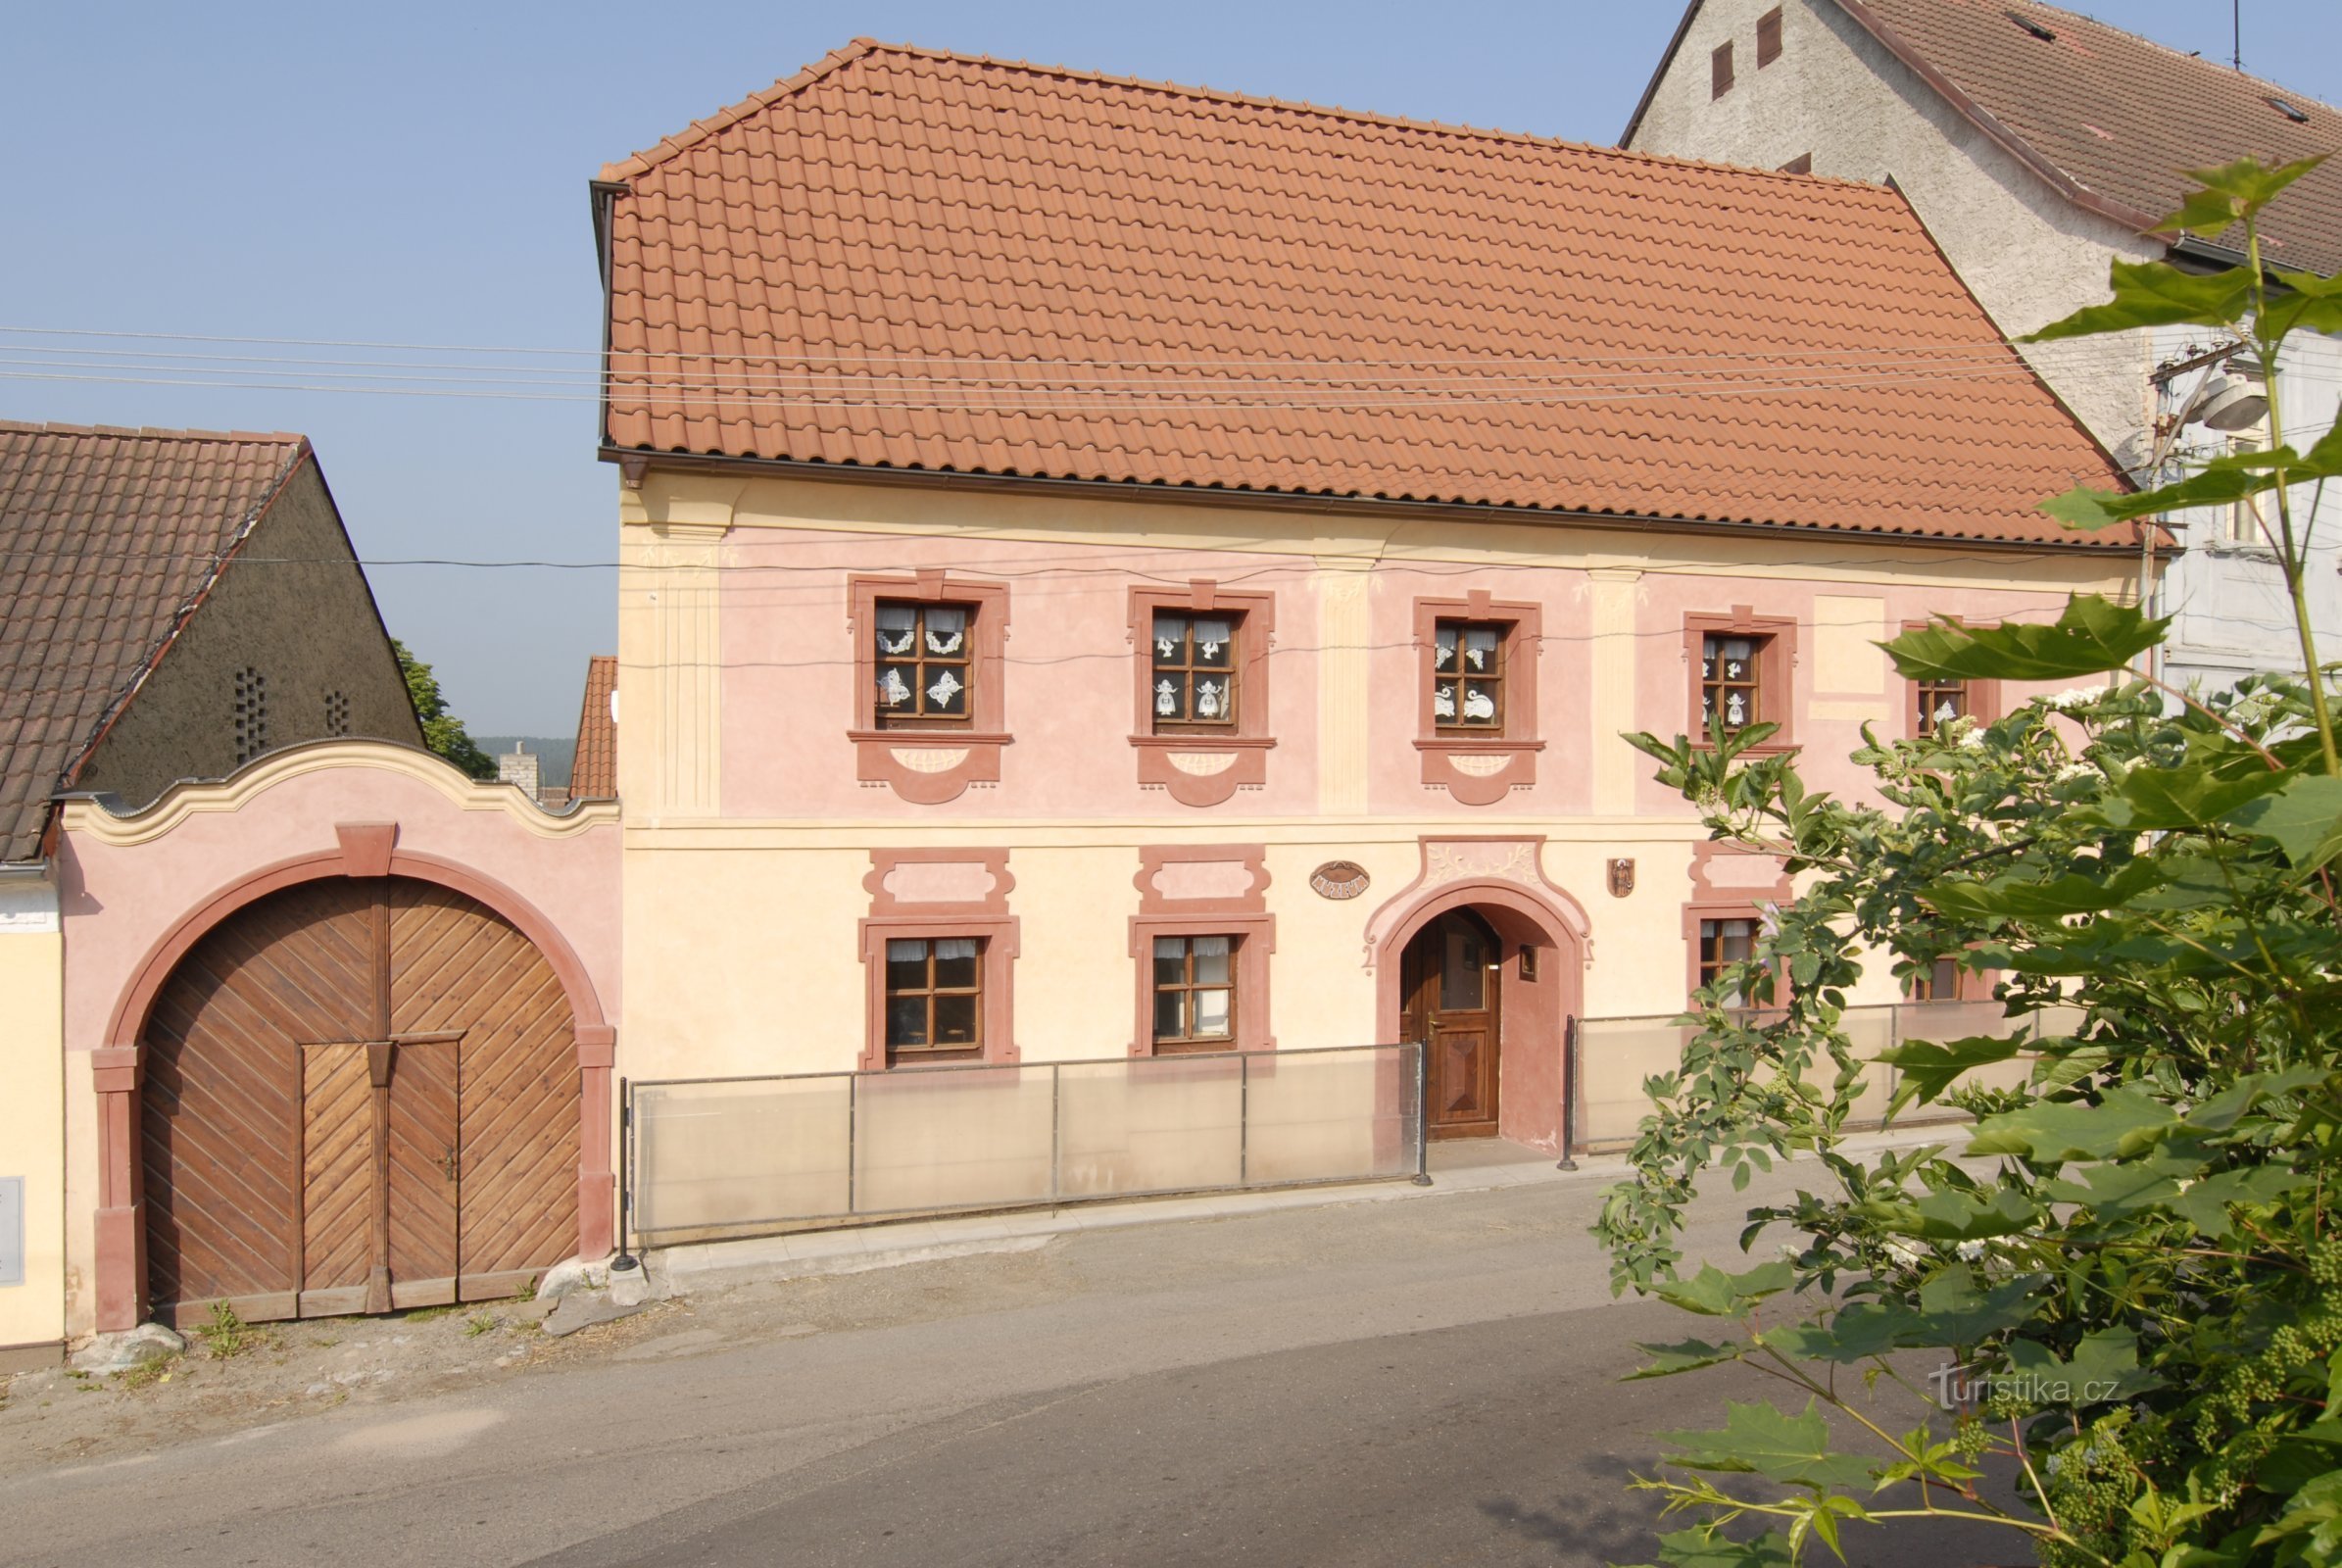 Štěpánovské Museum